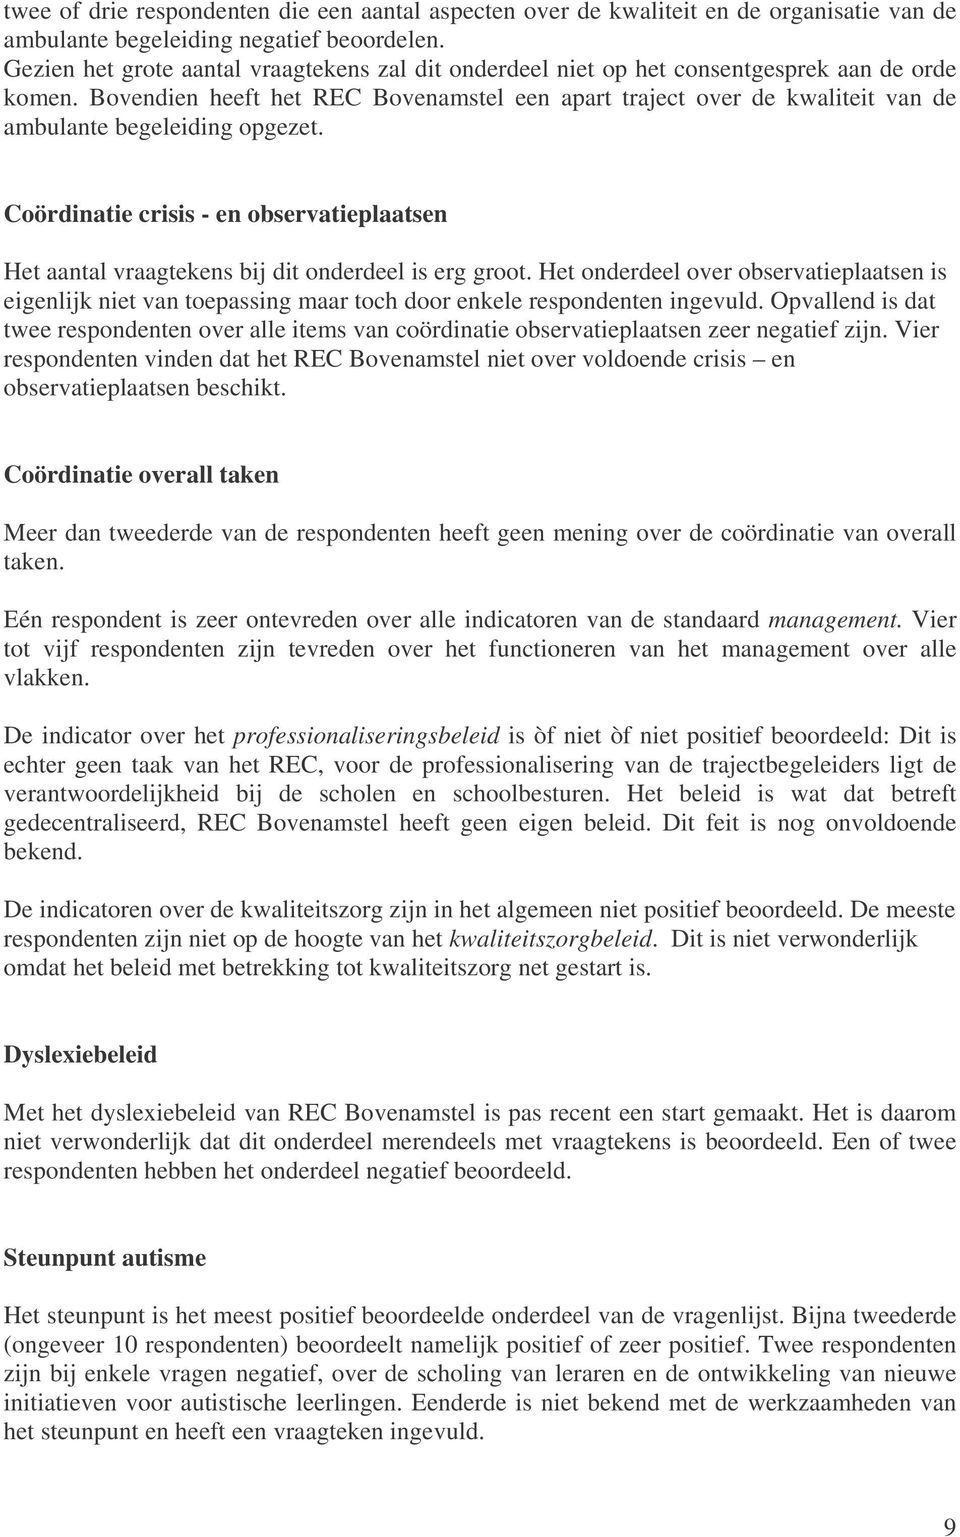 Bovendien heeft het REC Bovenamstel een apart traject over de kwaliteit van de ambulante begeleiding opgezet.